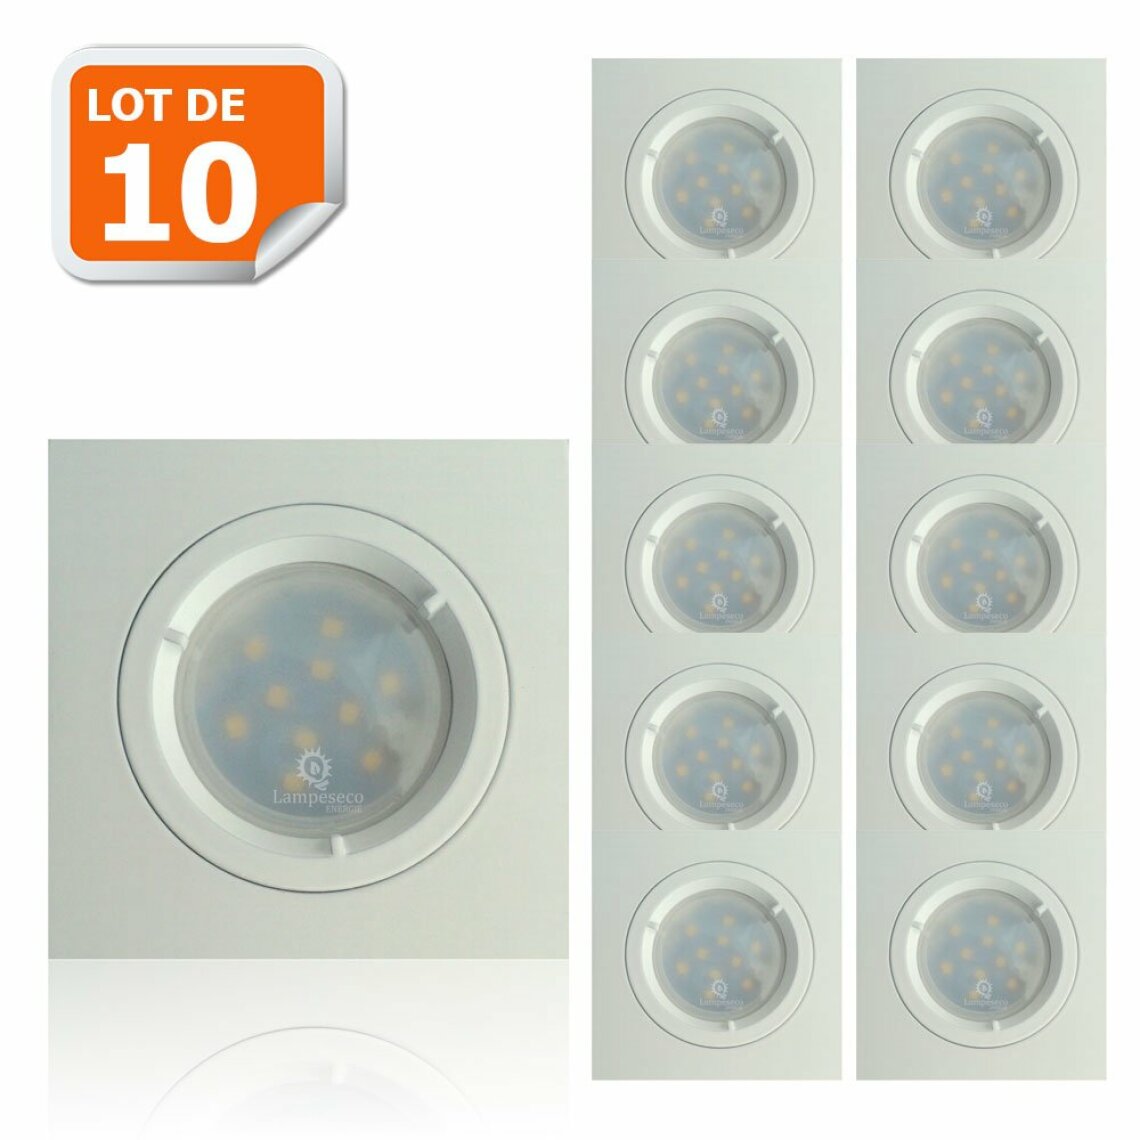 Lampesecoenergie - Lot de 10 Spots Led Blanc Carré lumière Blanc Neutre 5W eq. 50W ref.464 - Boîtes d'encastrement